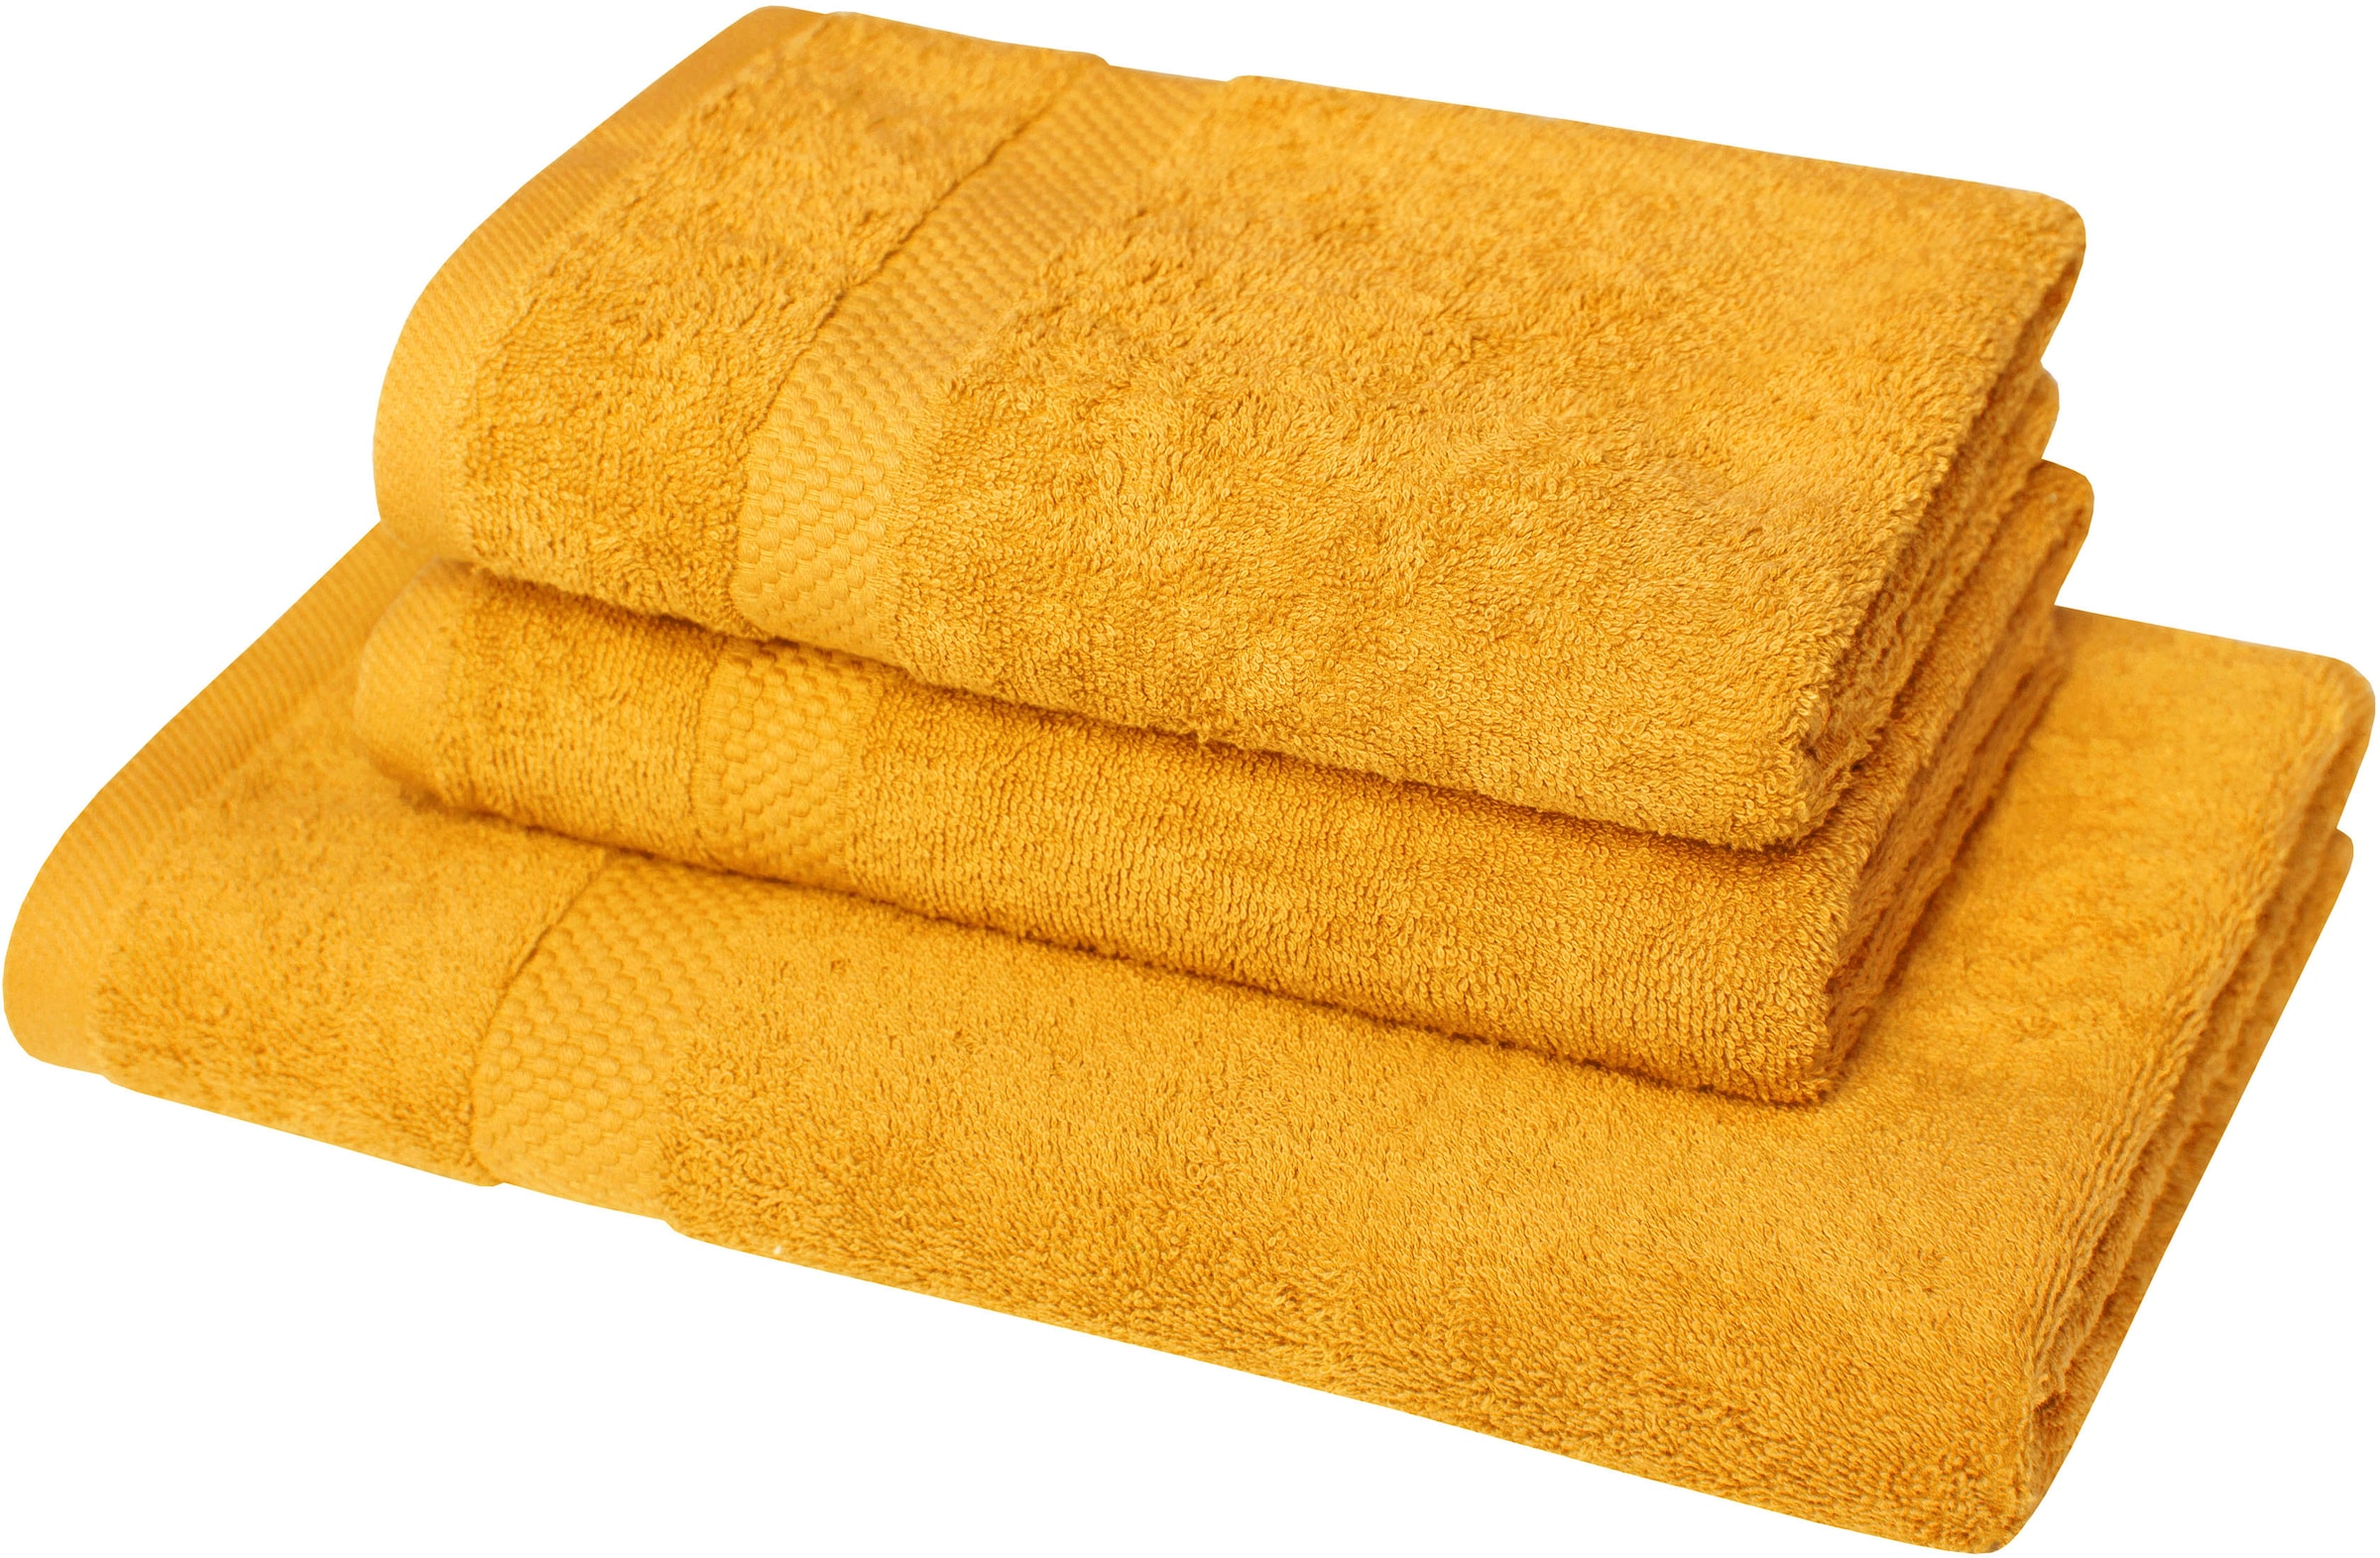 Handtuchsets aus Holz Preisvergleich 24 Moebel 